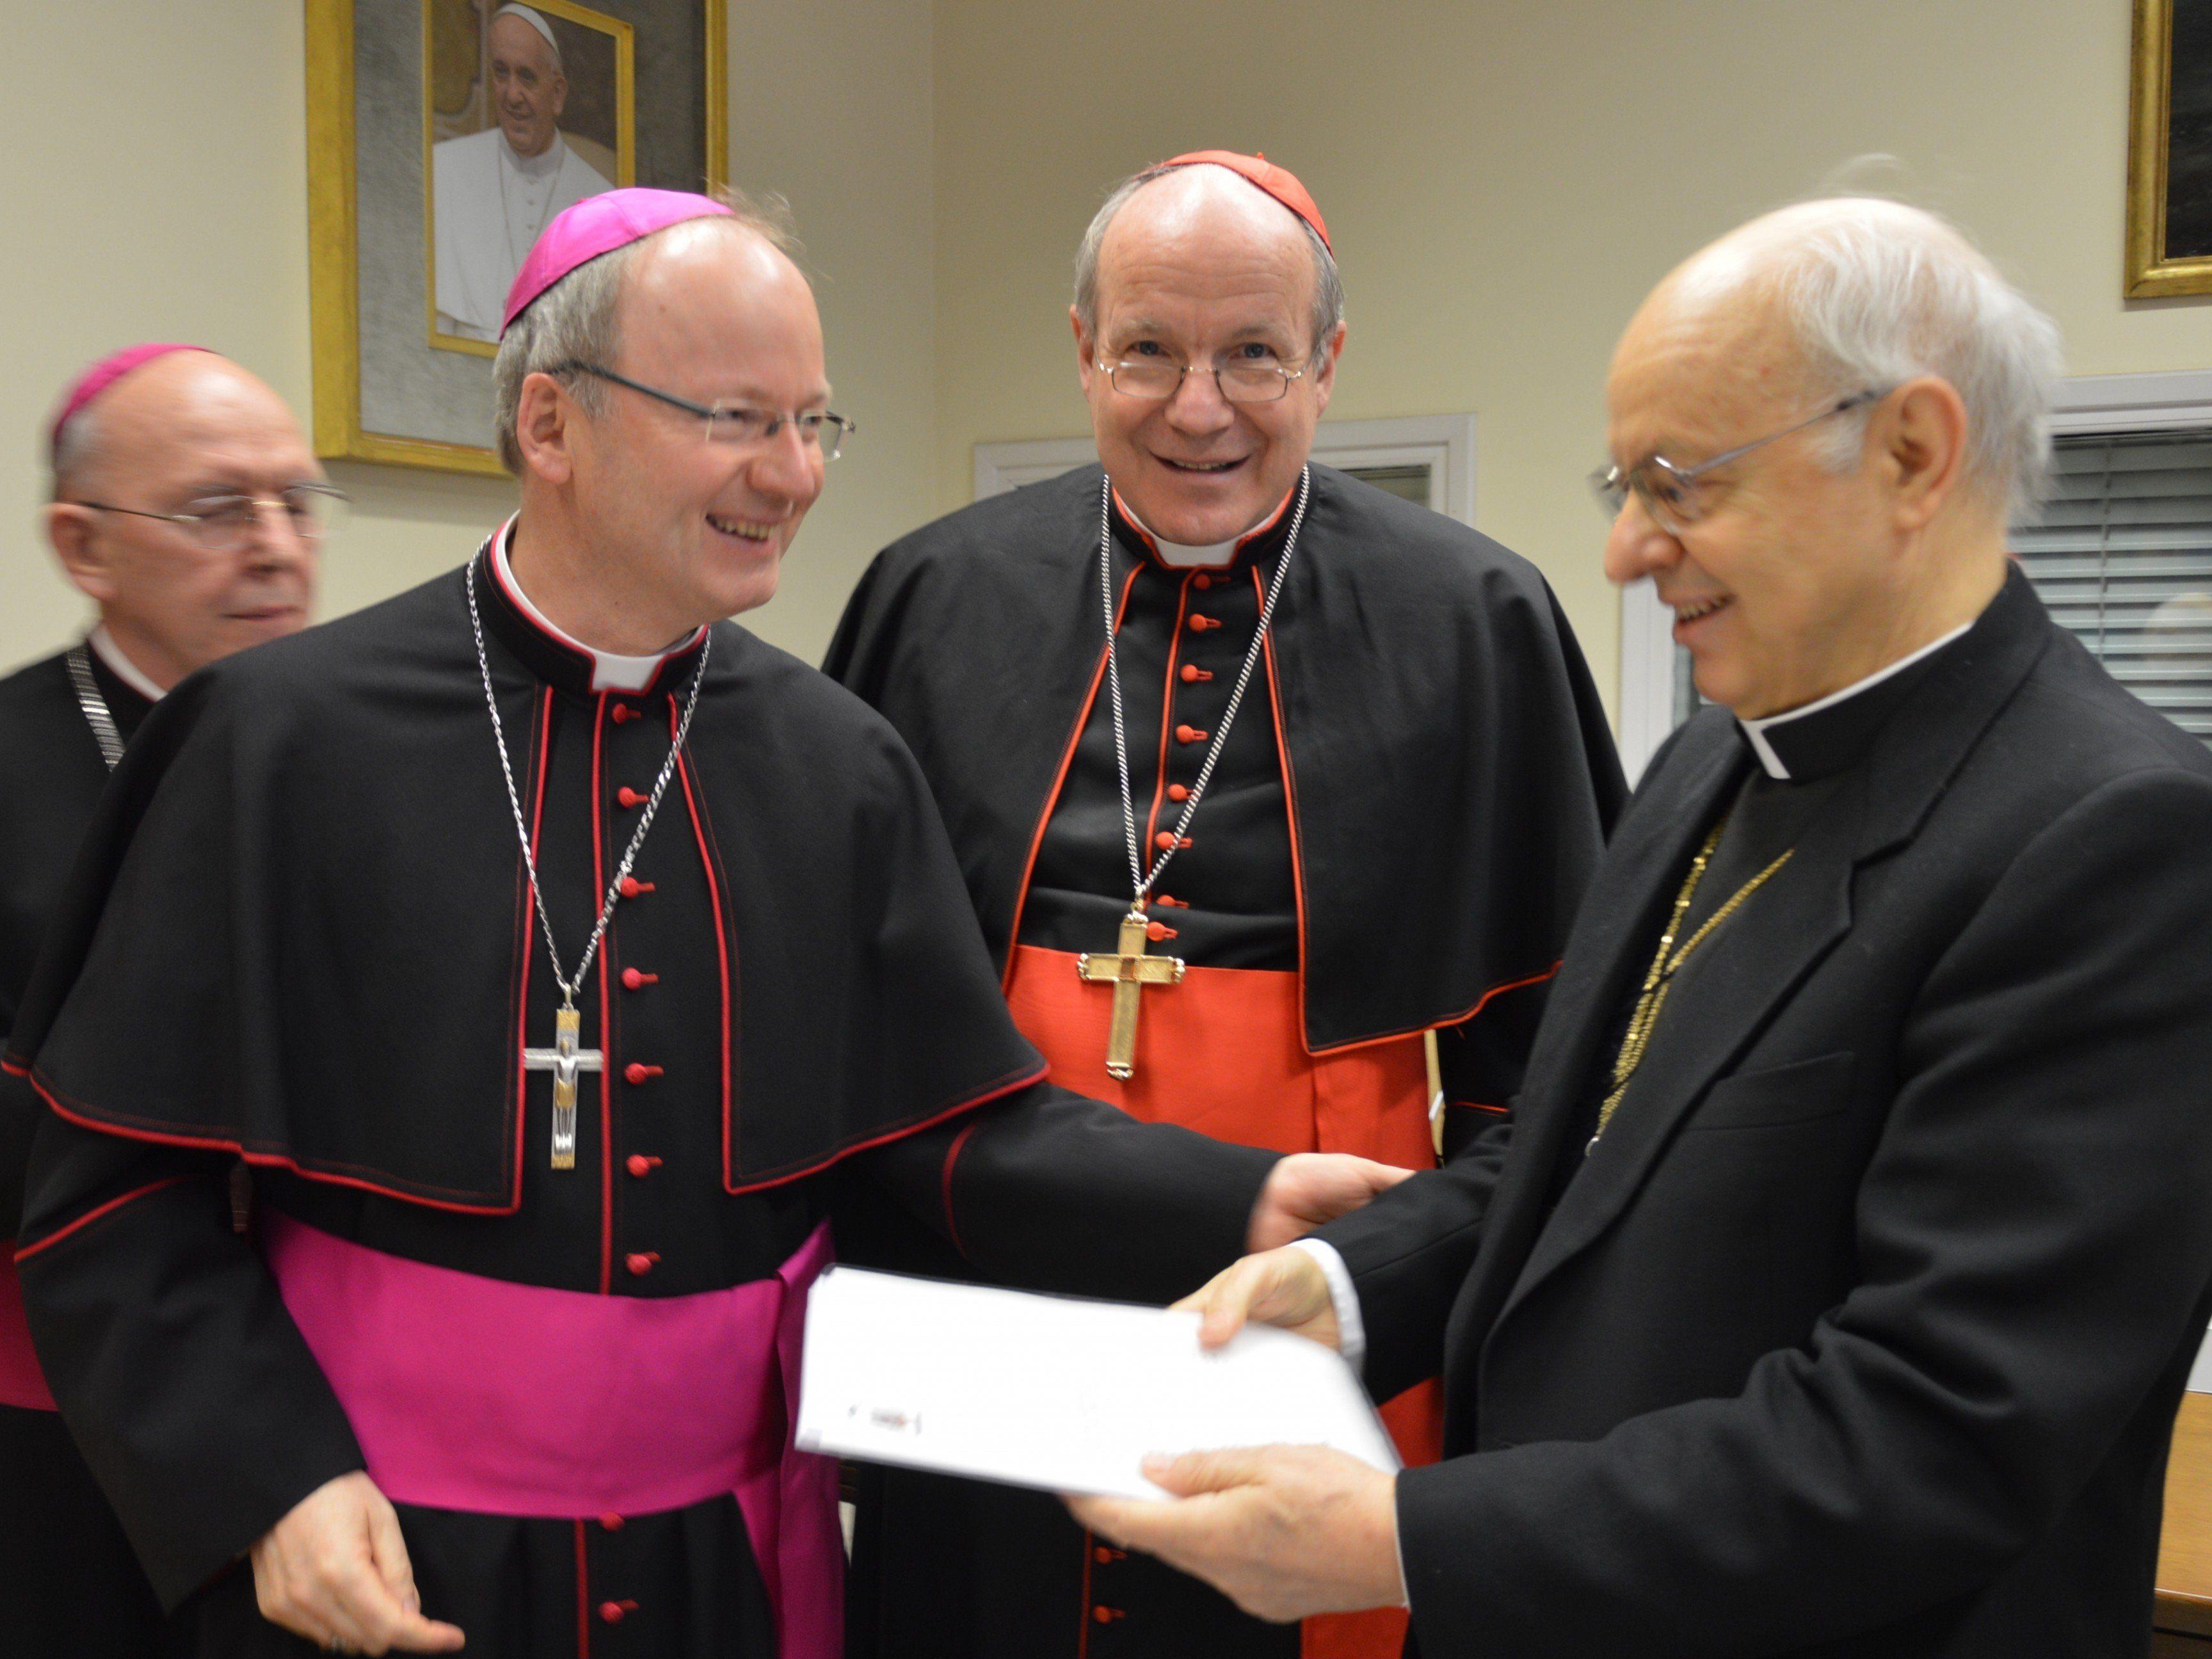 Bischofssynode Familienumfrage: Bischof Elbs, Kardinal Schönborn, Kardinal Baldisseri